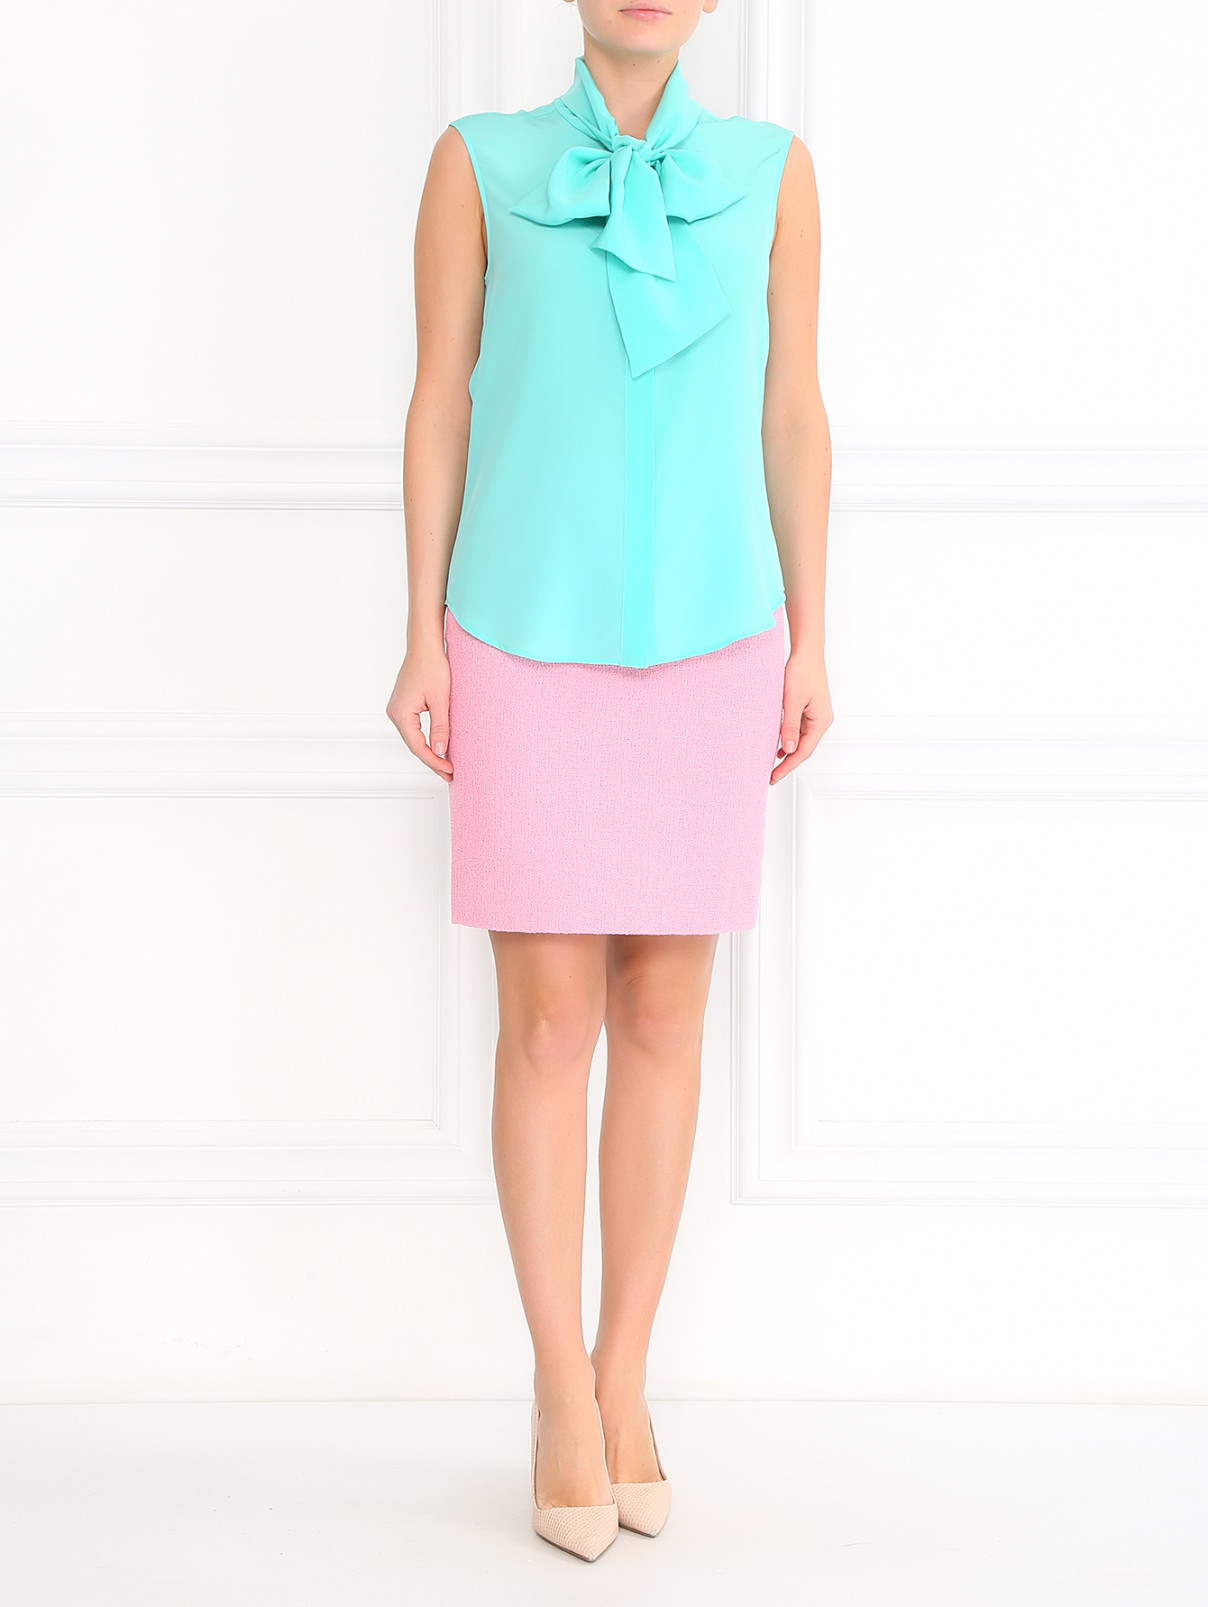 Шелковая блуза без рукавов Moschino Couture  –  Модель Общий вид  – Цвет:  Зеленый